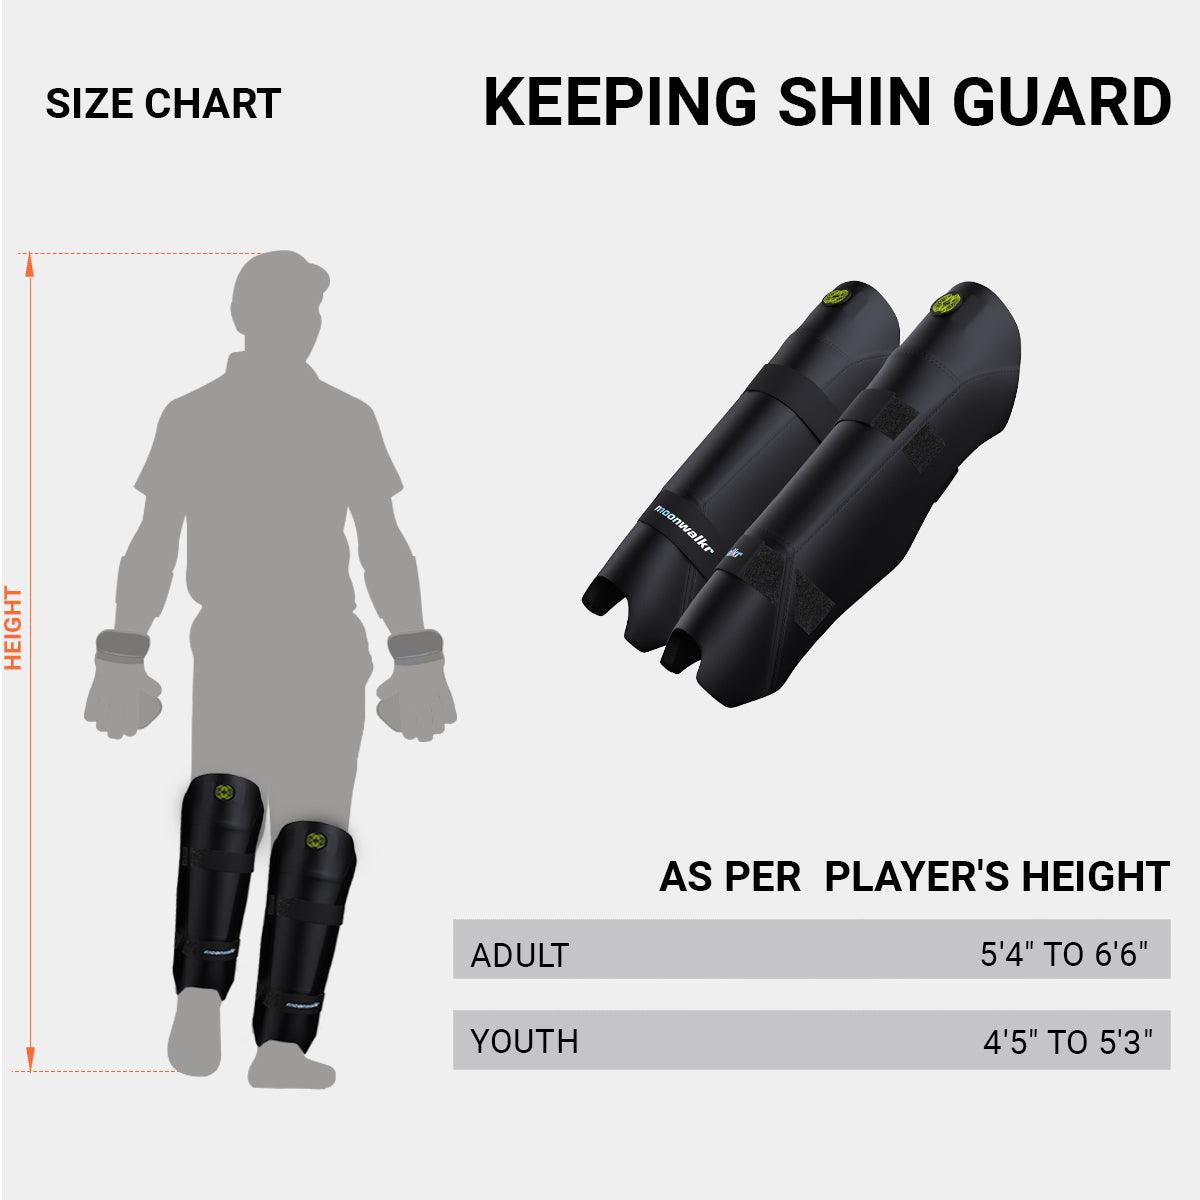 Keeping Shin Guards